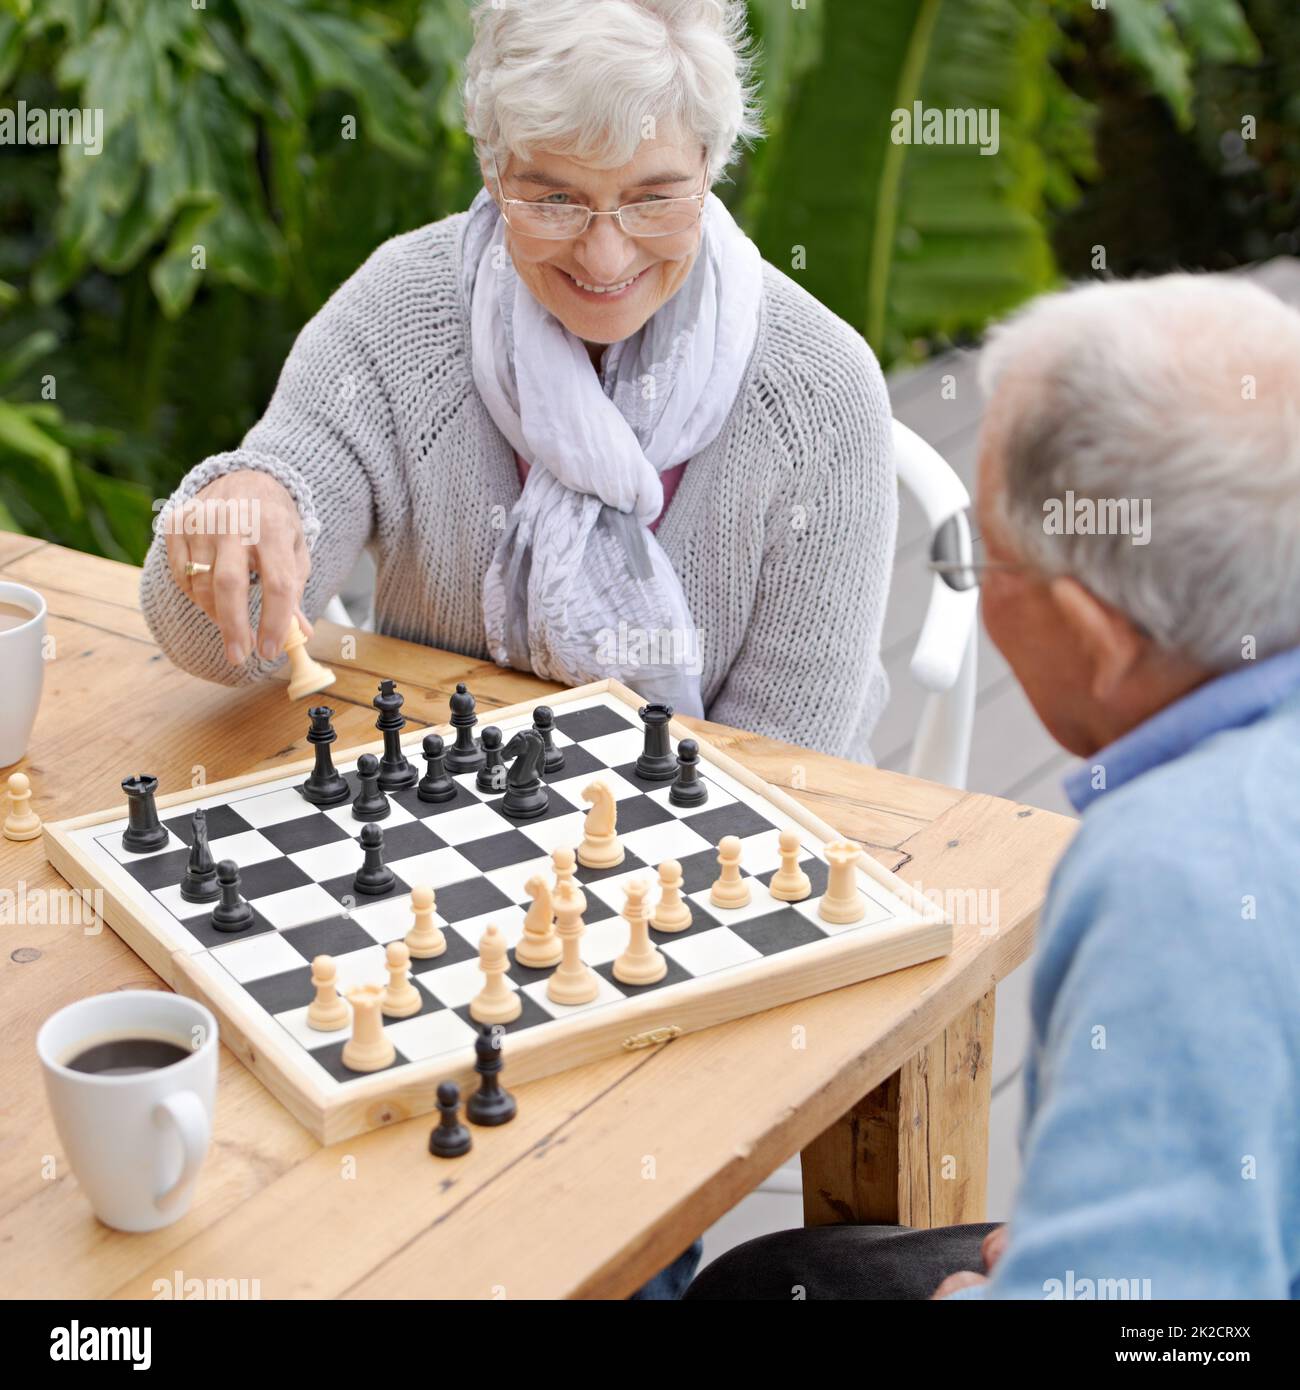 Diese nächsten Schritte werden mir das Spiel gewinnen. Ein älteres Paar spielt im Freien zusammen Schach. Stockfoto